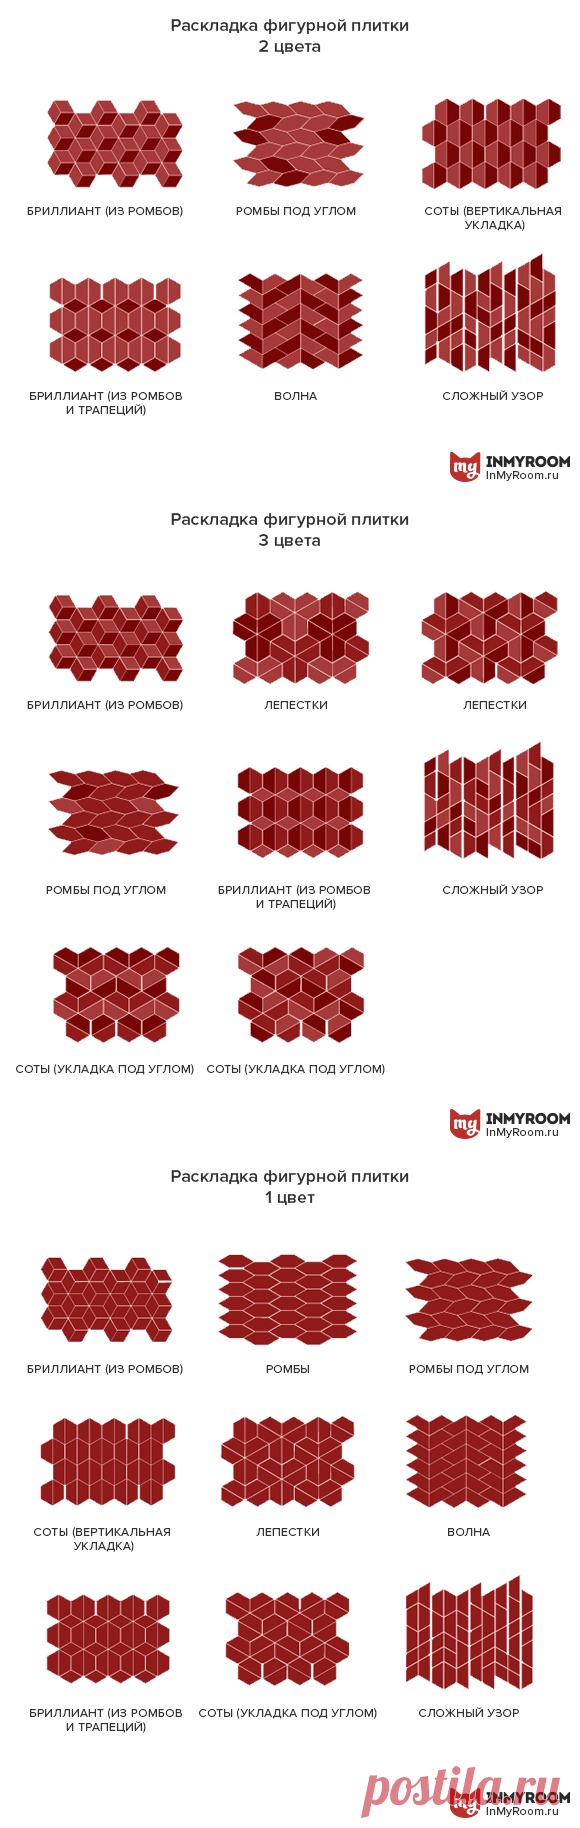 50+ вариантов укладки керамической плитки, которые вам понравятся | Свежие идеи дизайна интерьеров, декора, архитектуры на InMyRoom.ru